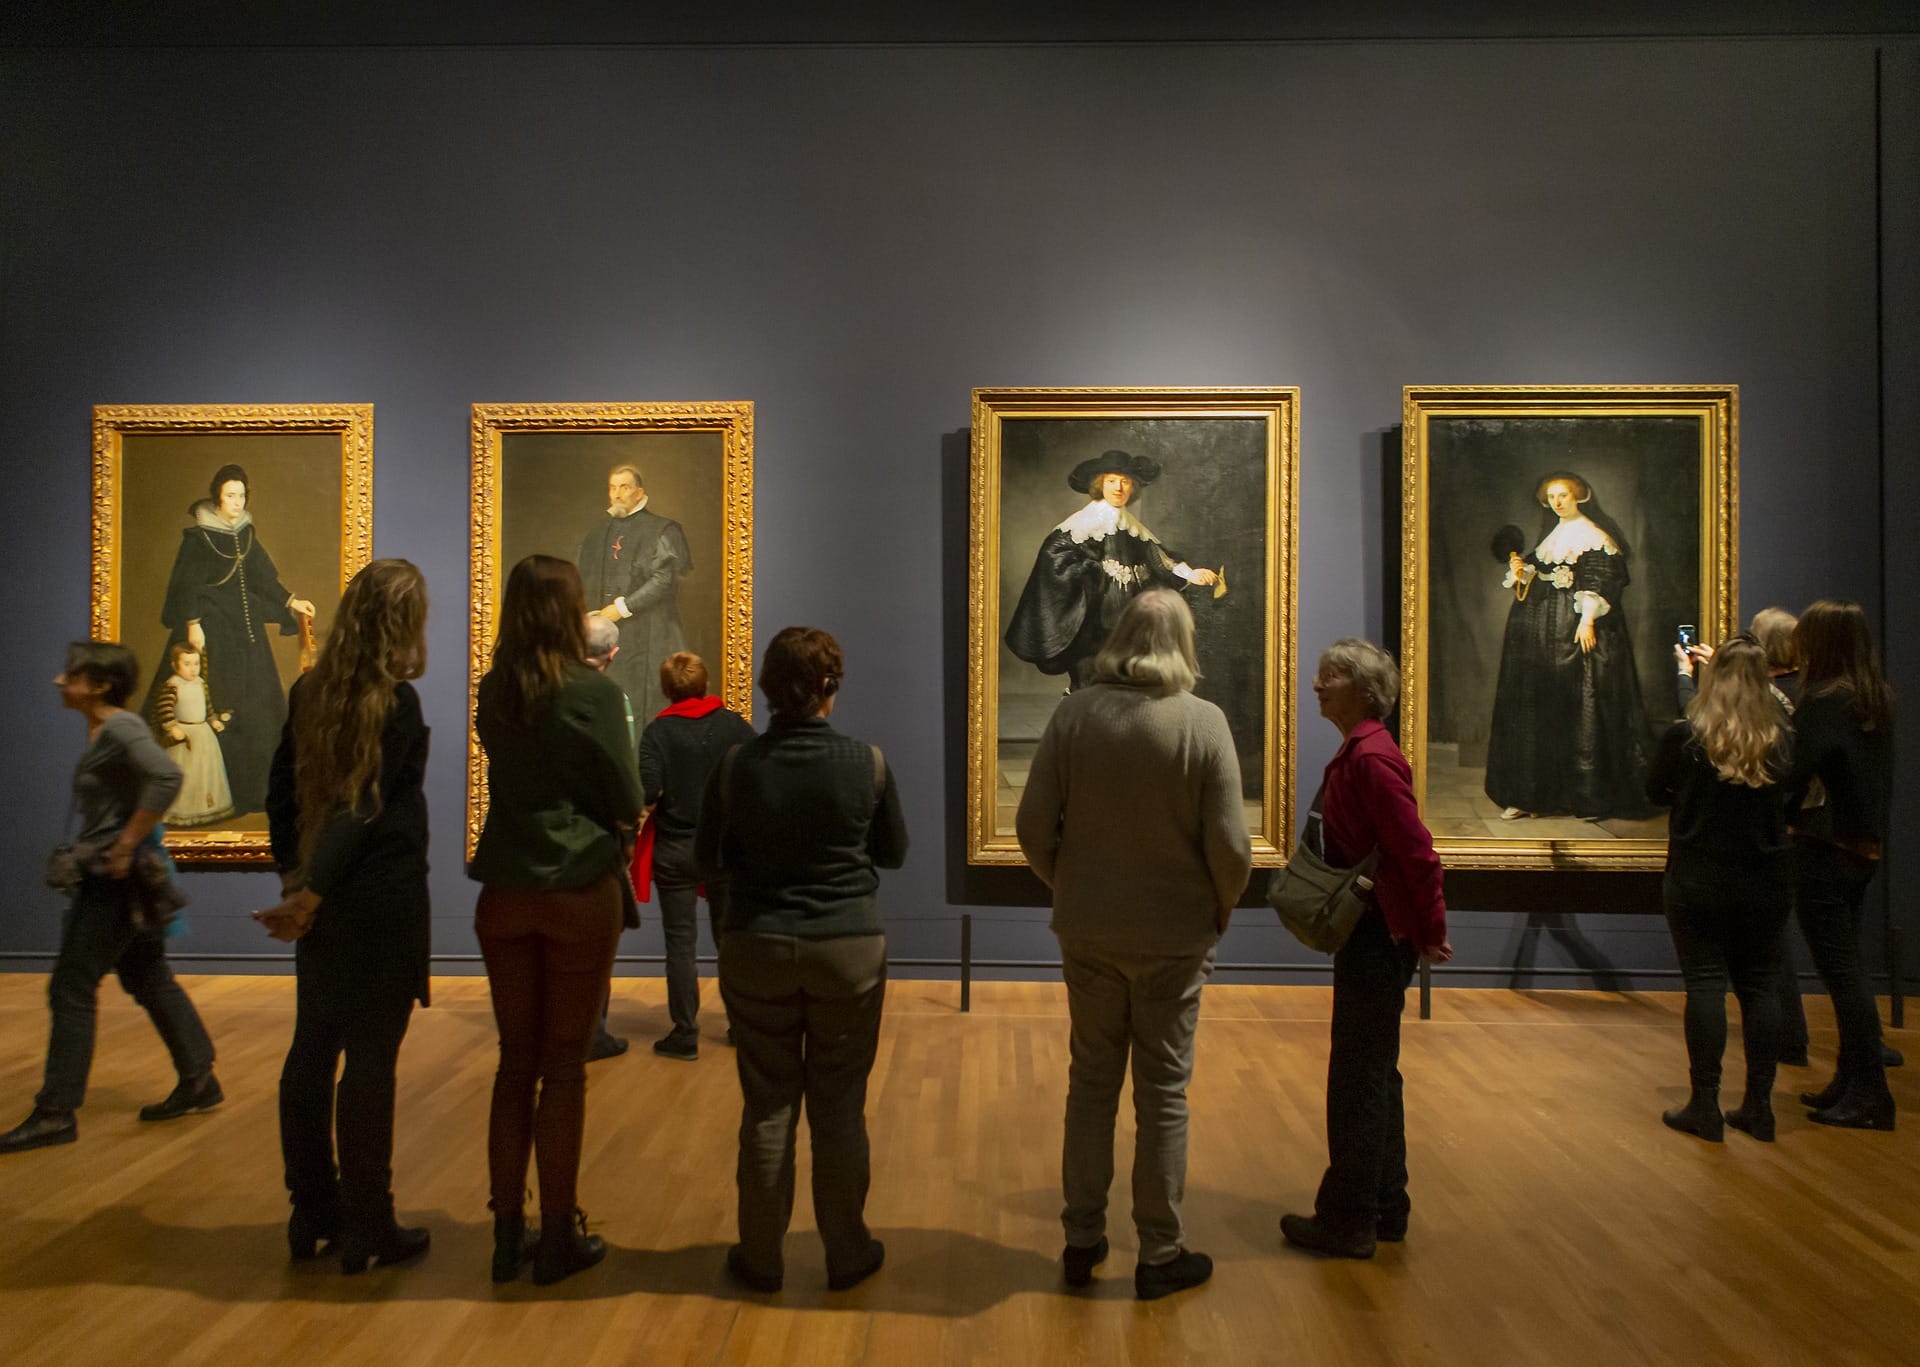 Rijksmuseum: Das Museum in Amsterdam beherbergt unter anderem "Die Nachtwache" von Rembrandt und "Die Milchmagd" von Johannes Vermeer.